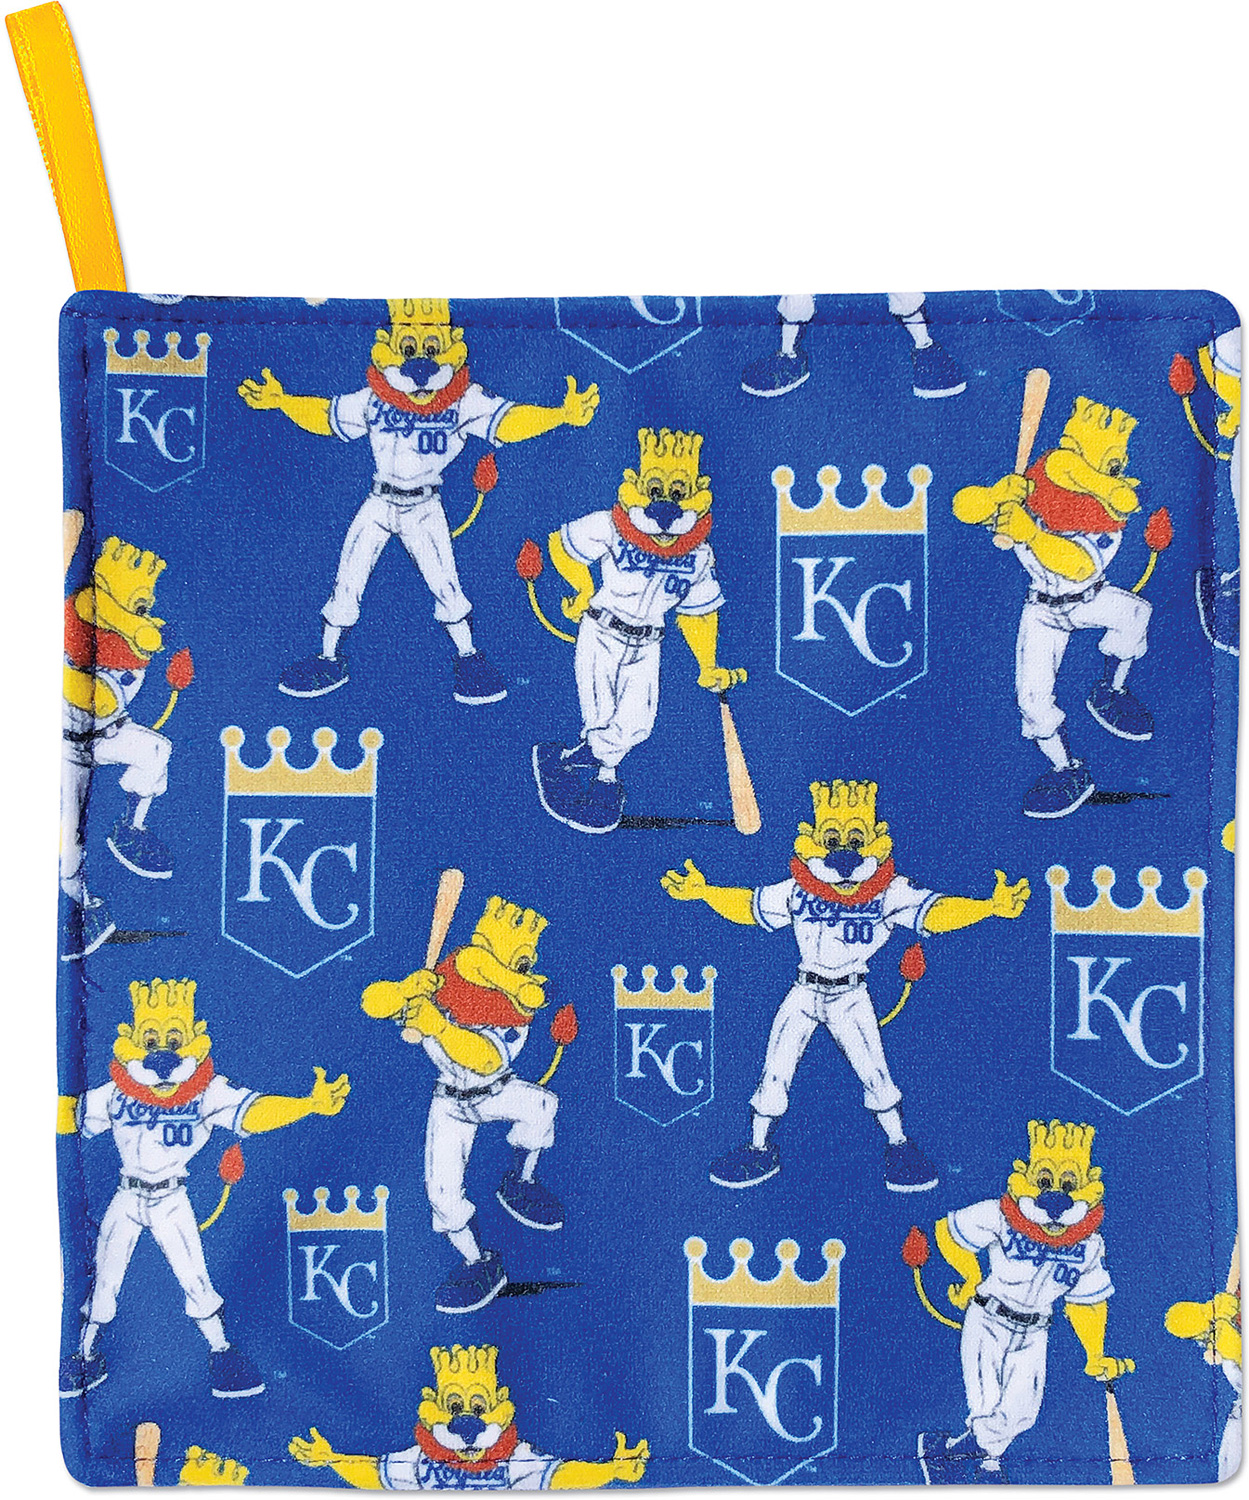 Rally Paper Mascots - Kansas City Royals